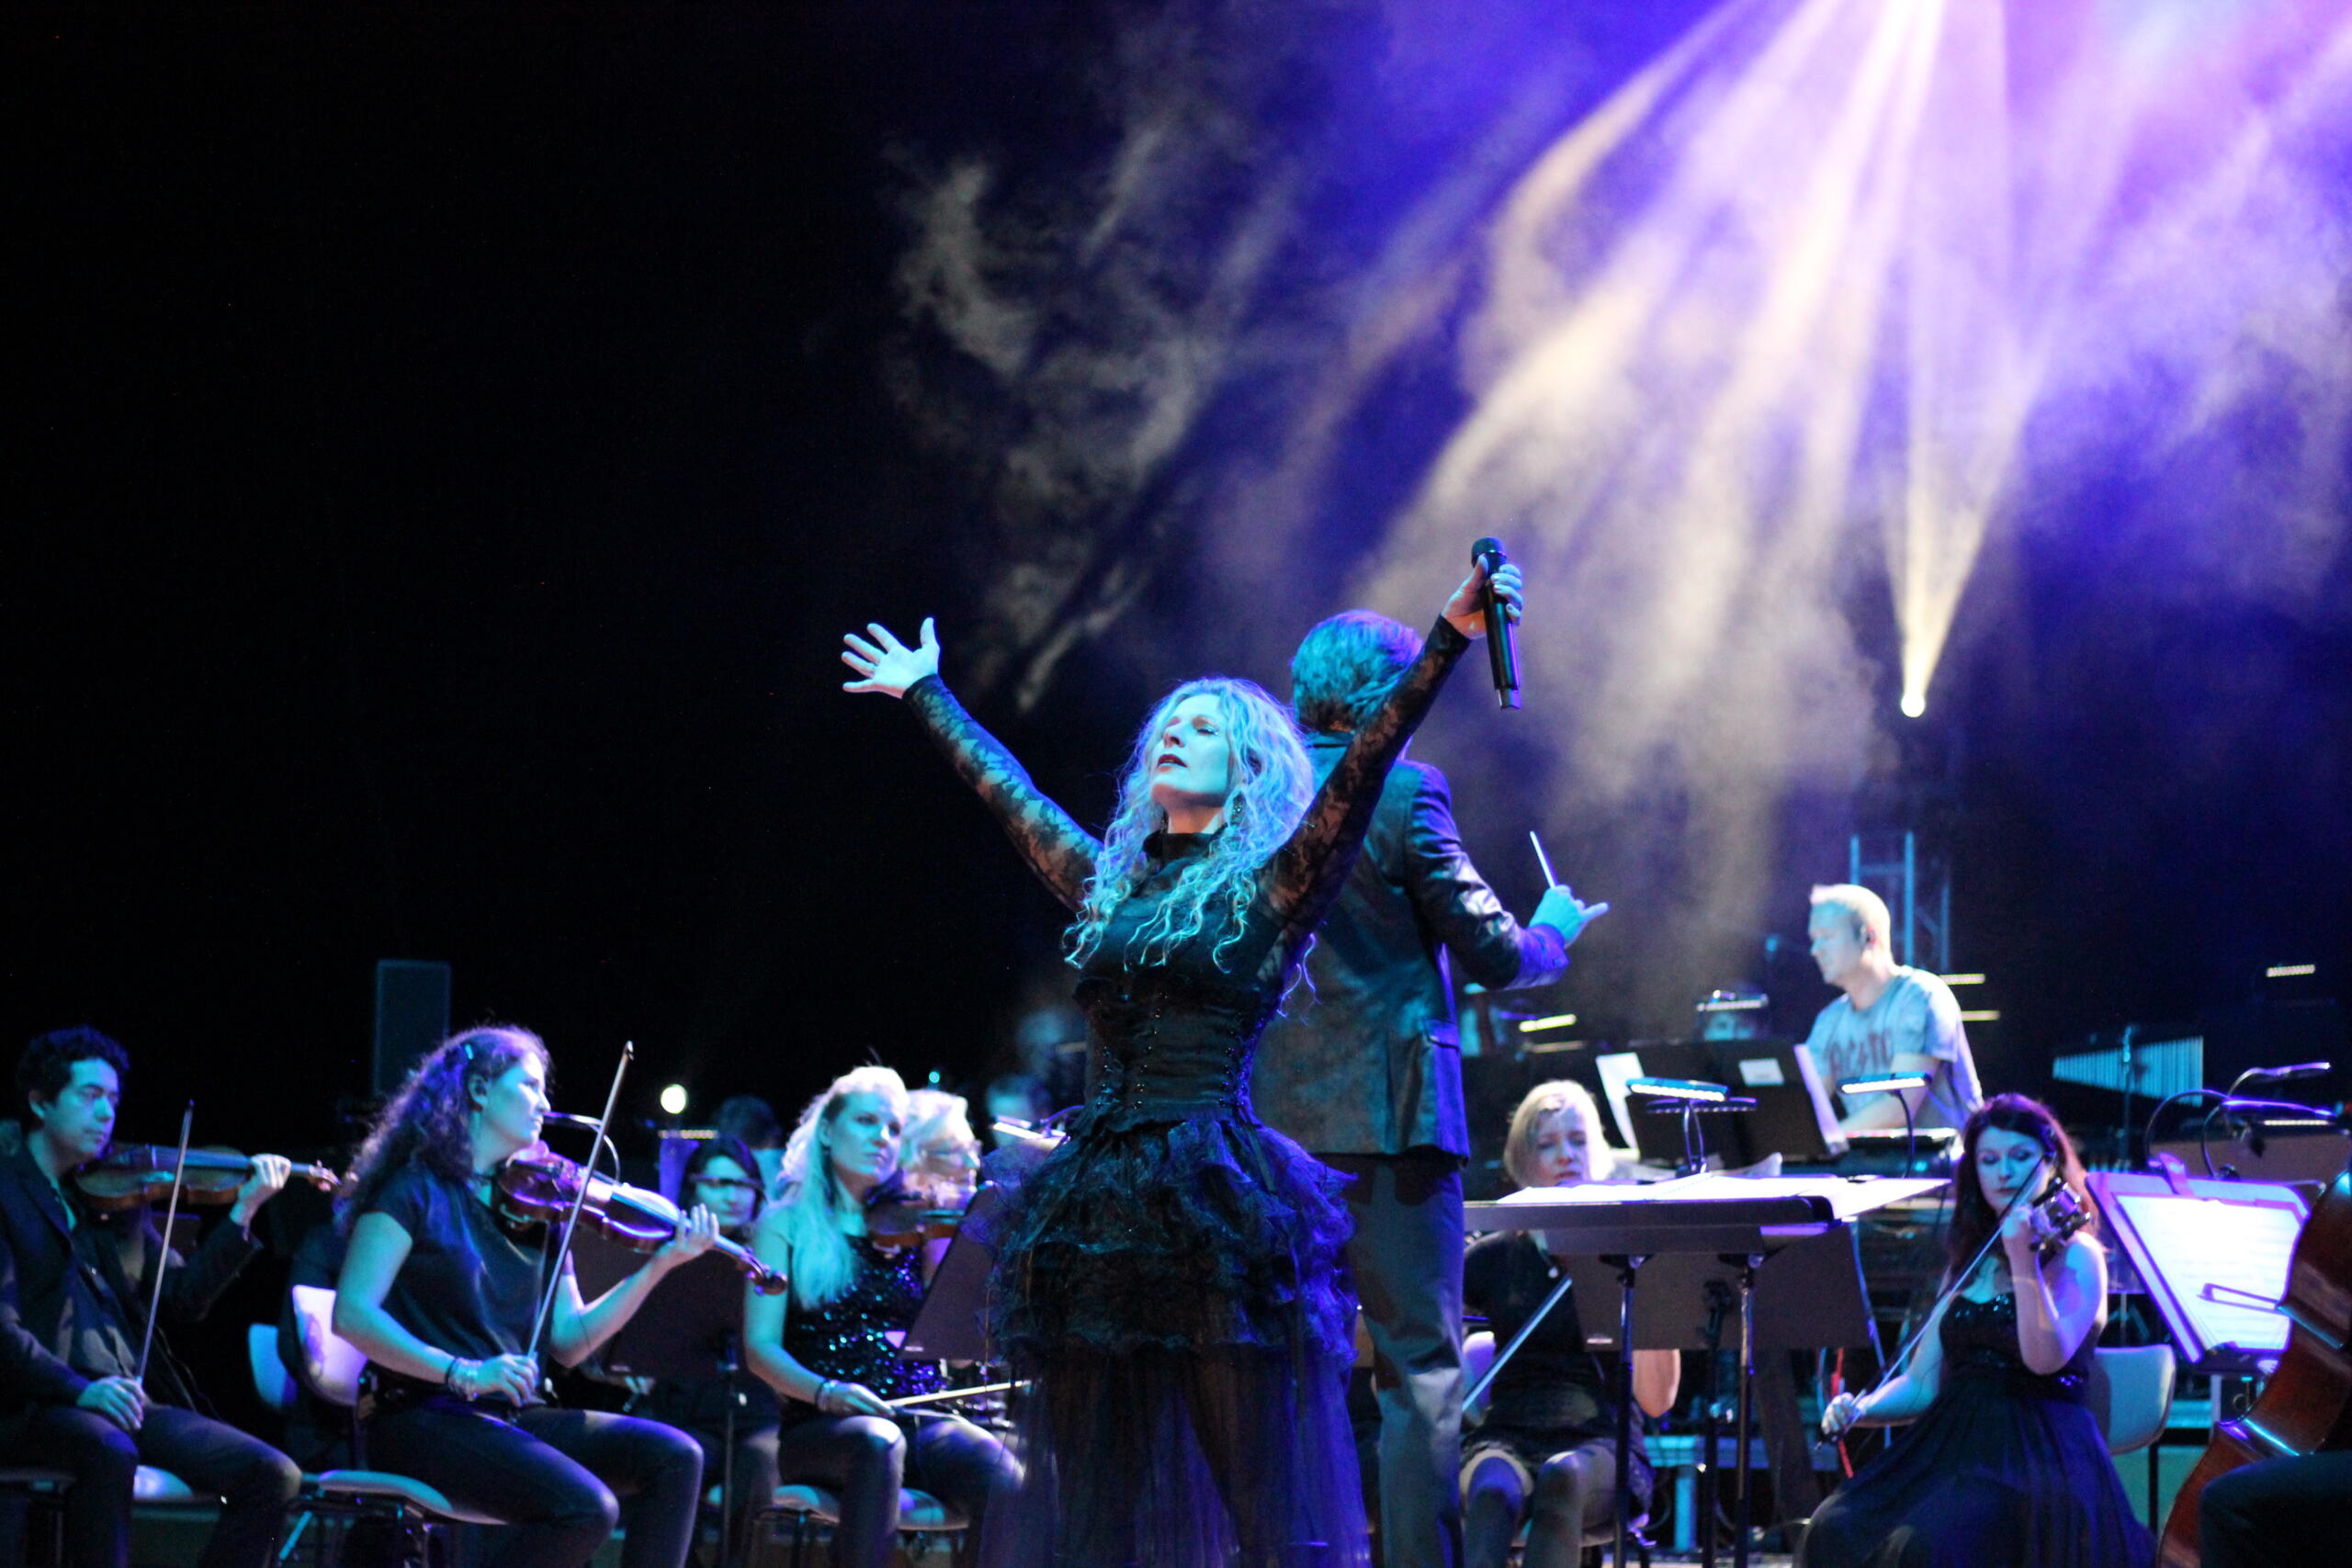 Eine Frau steht in einem schwarzen Kostüm auf einer Bühne, die blau erleuchtet ist. Im Hintergrund sitzen Musiker und Musikerinnen mit ihren Instrumenten.